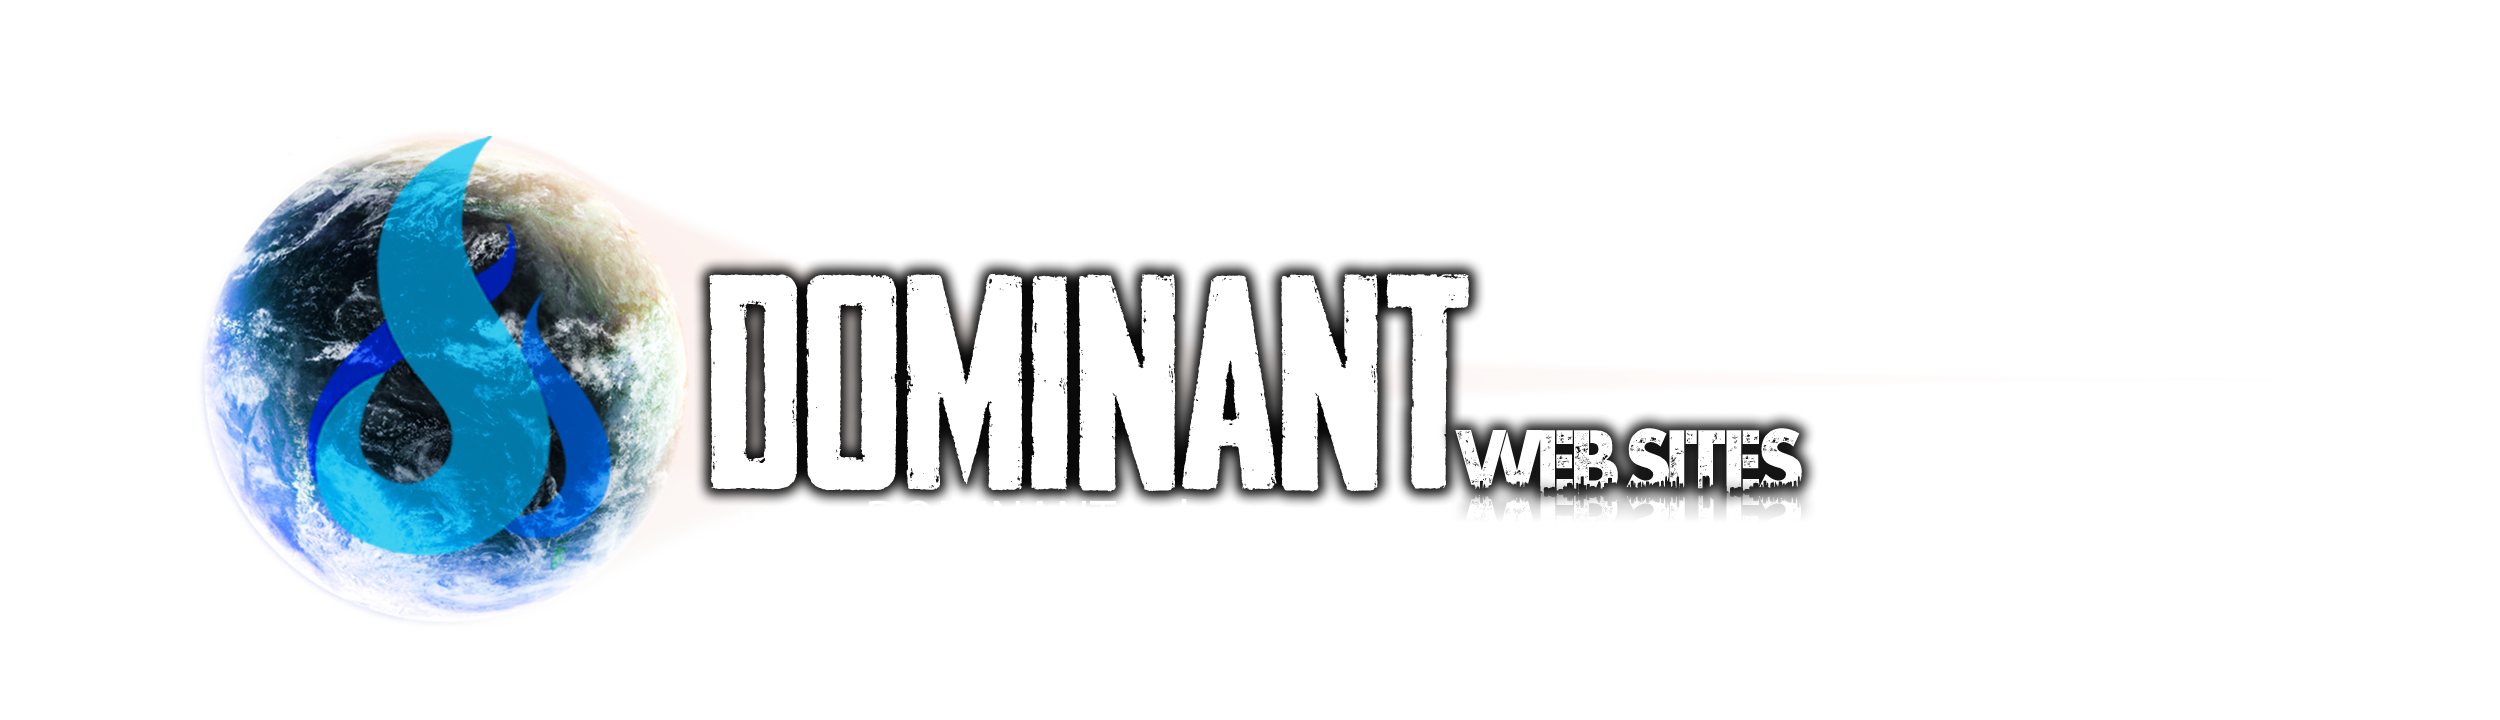 DOMINANTwebsites Logo | DOMINANTwebsites.com 